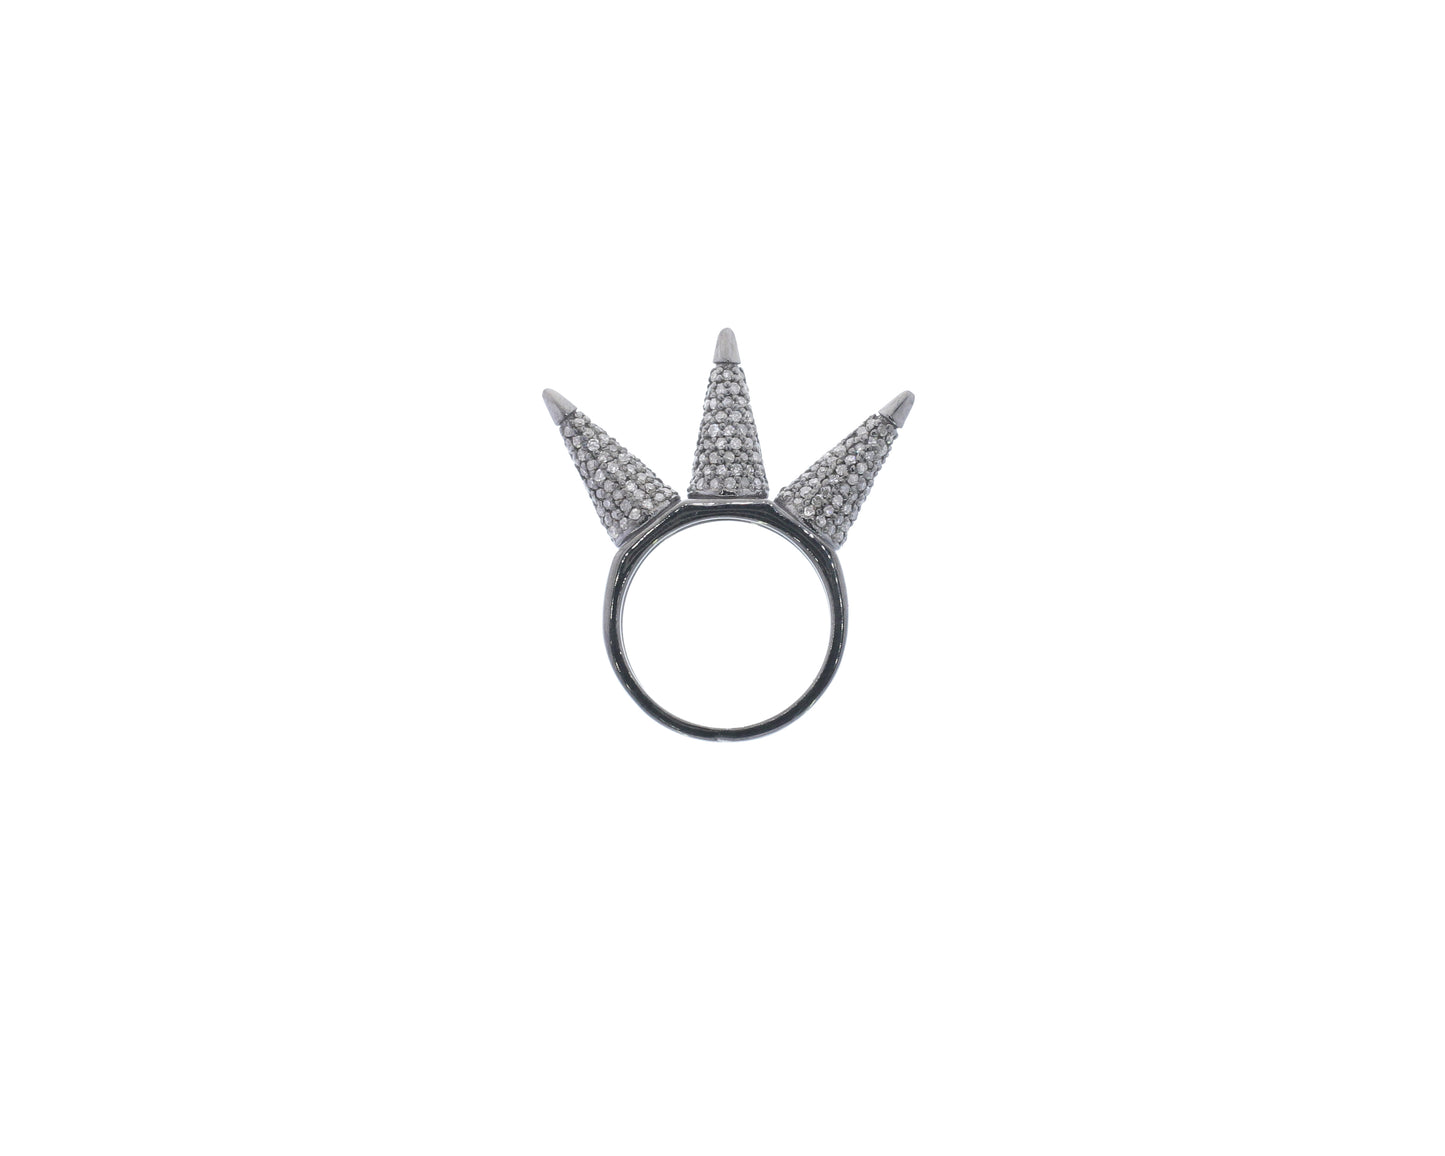 Diamond Three Cone Diamond Ring, Pave Diamond Ring, Pave Three Cone Ring, Approx 5 x 27mm. Sterling Silver